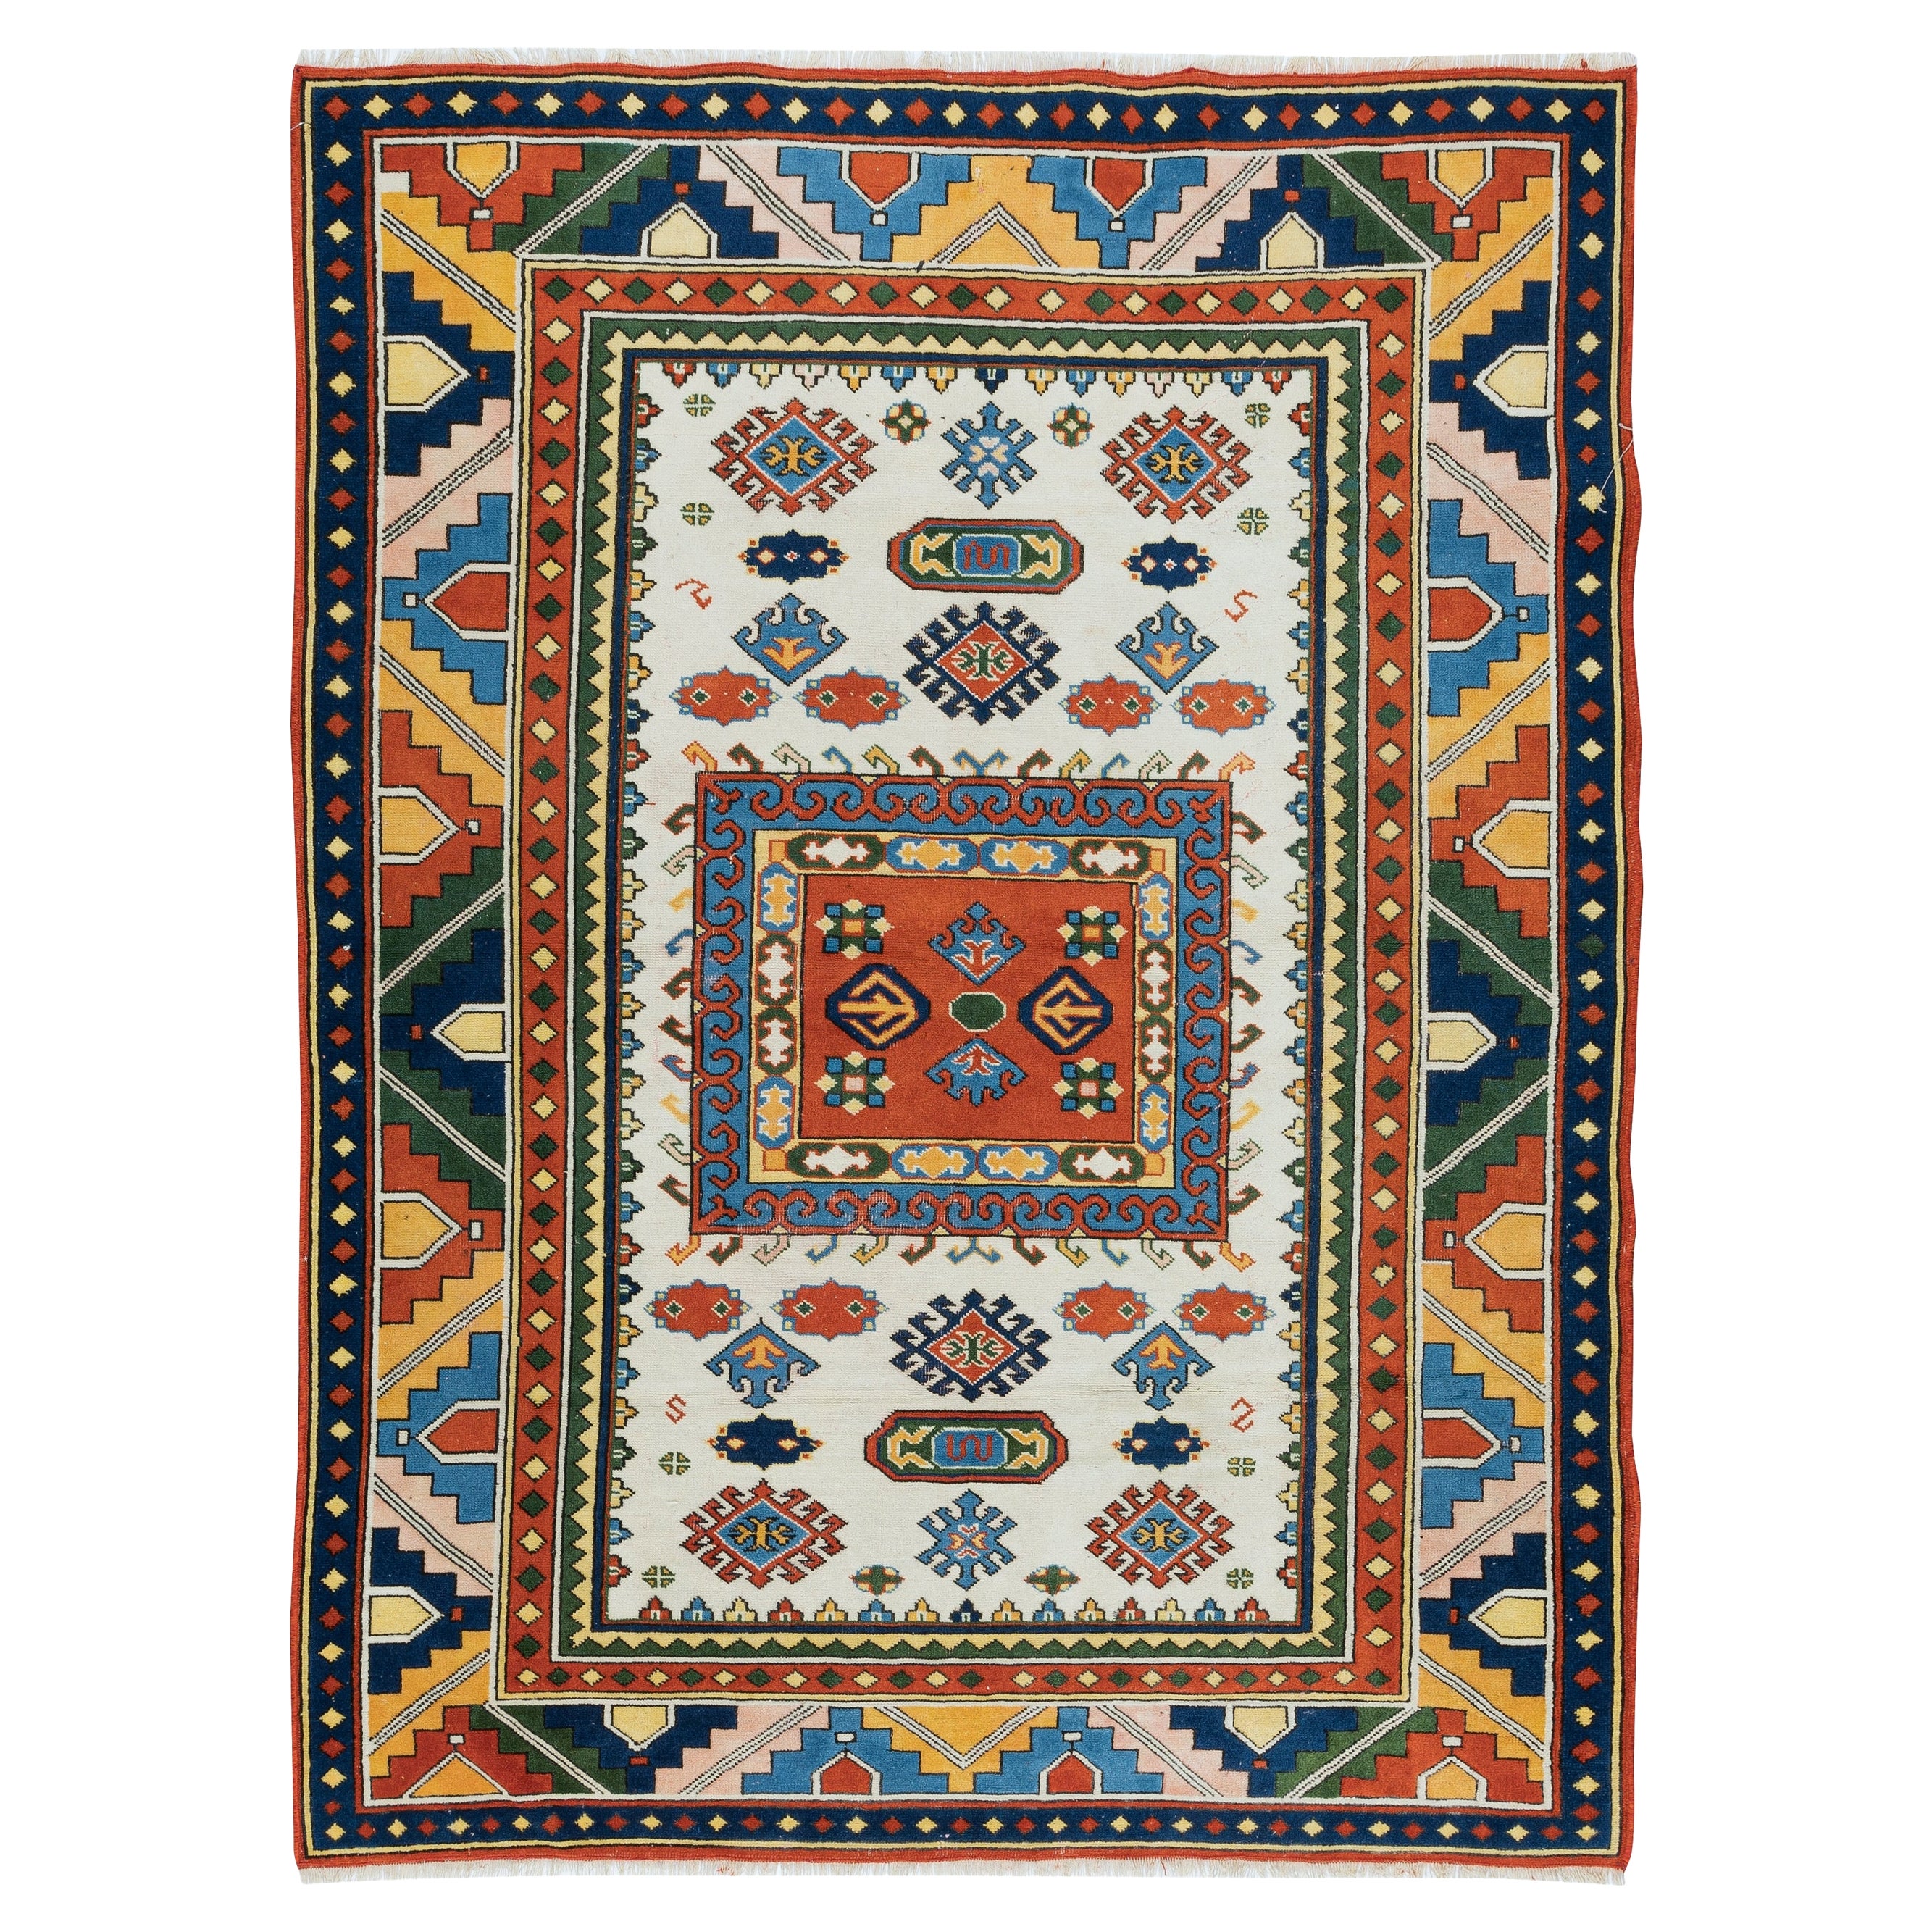 4x5.6 Ft Colorful Accent Rug, Vintage Turkish Carpet, Handmade Floor Covering (tapis turc vintage, revêtement de sol fait à la main)